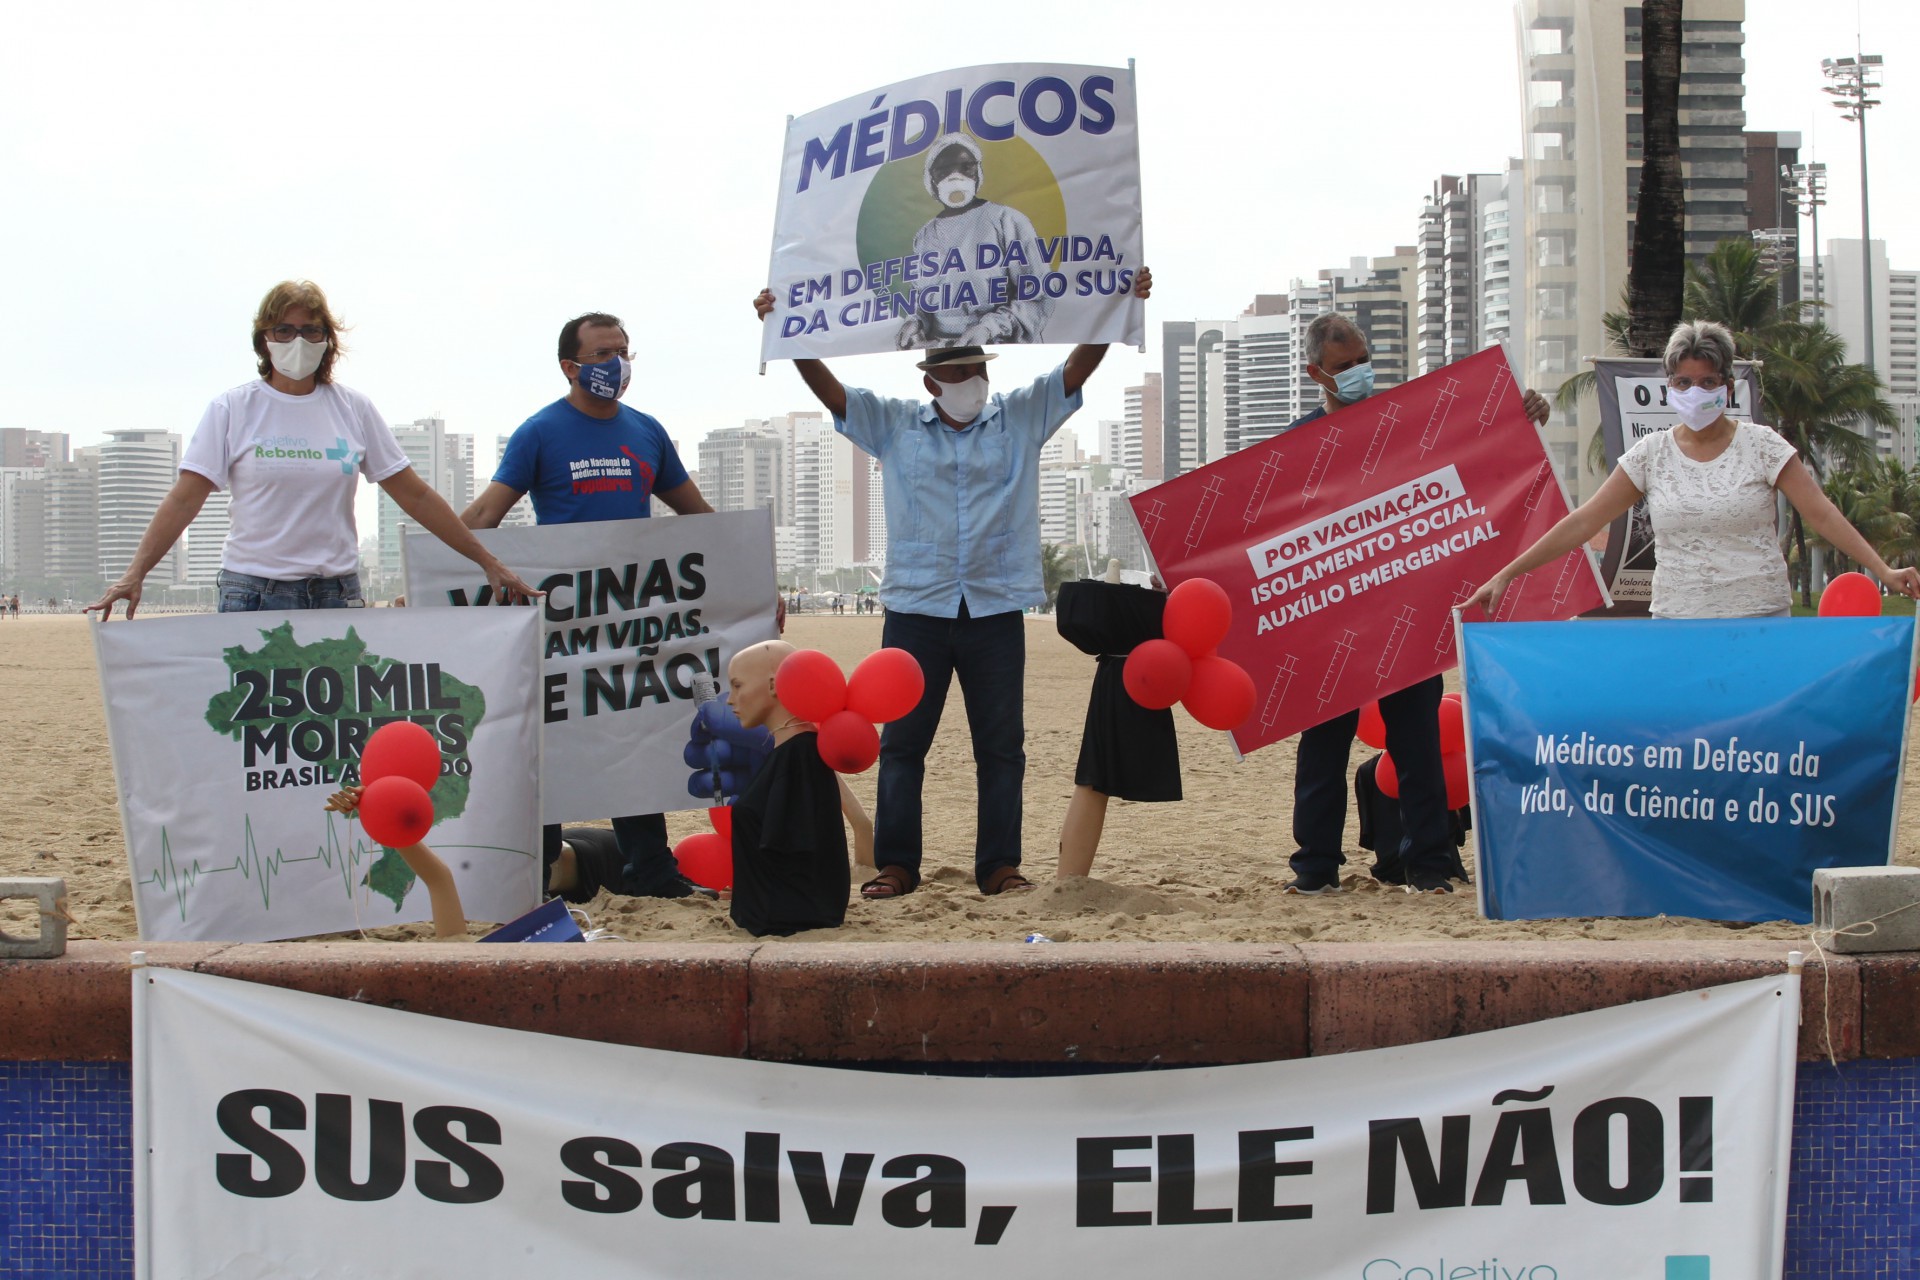 FORTALEZA,CE, BRASIL, 26.02.2021: Protesto de médicos do coletivo Rebento em homenagem aos 250 mil mortos por covid no Brasil. Praia de Iracema.  (Fotos: Fabio Lima/O POVO)